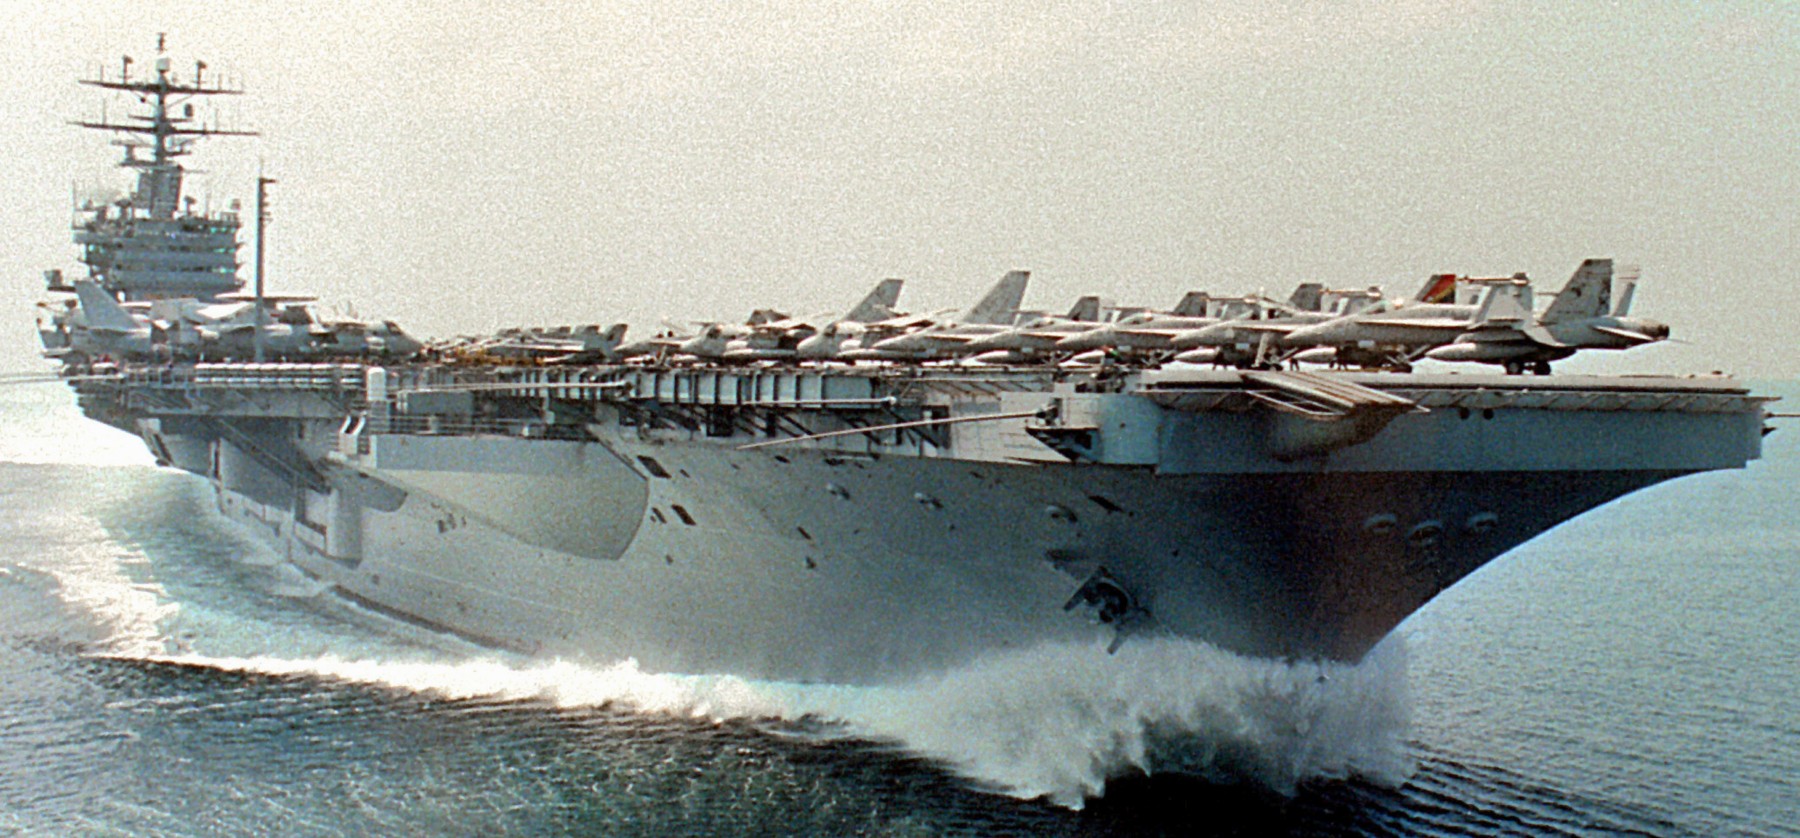 cvn-70 uss carl vinson nimitz class aircraft carrier air wing cvw-14 us navy 76